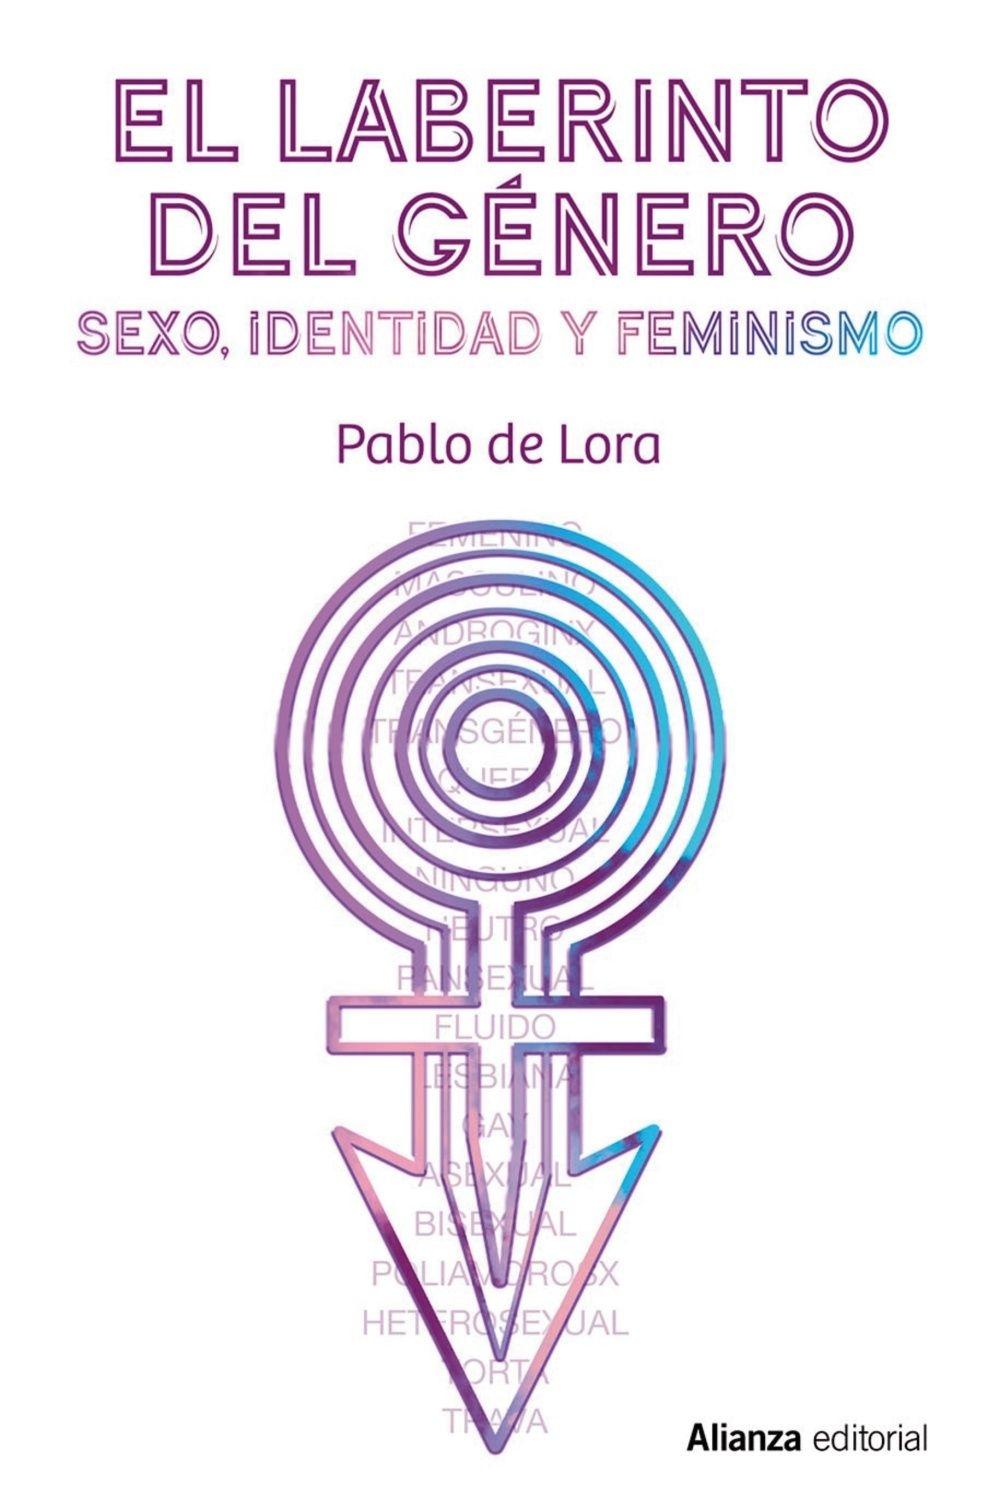 EL LABERINTO DEL GÉNERO "SEXO, IDENTIDAD Y FEMINISMO"